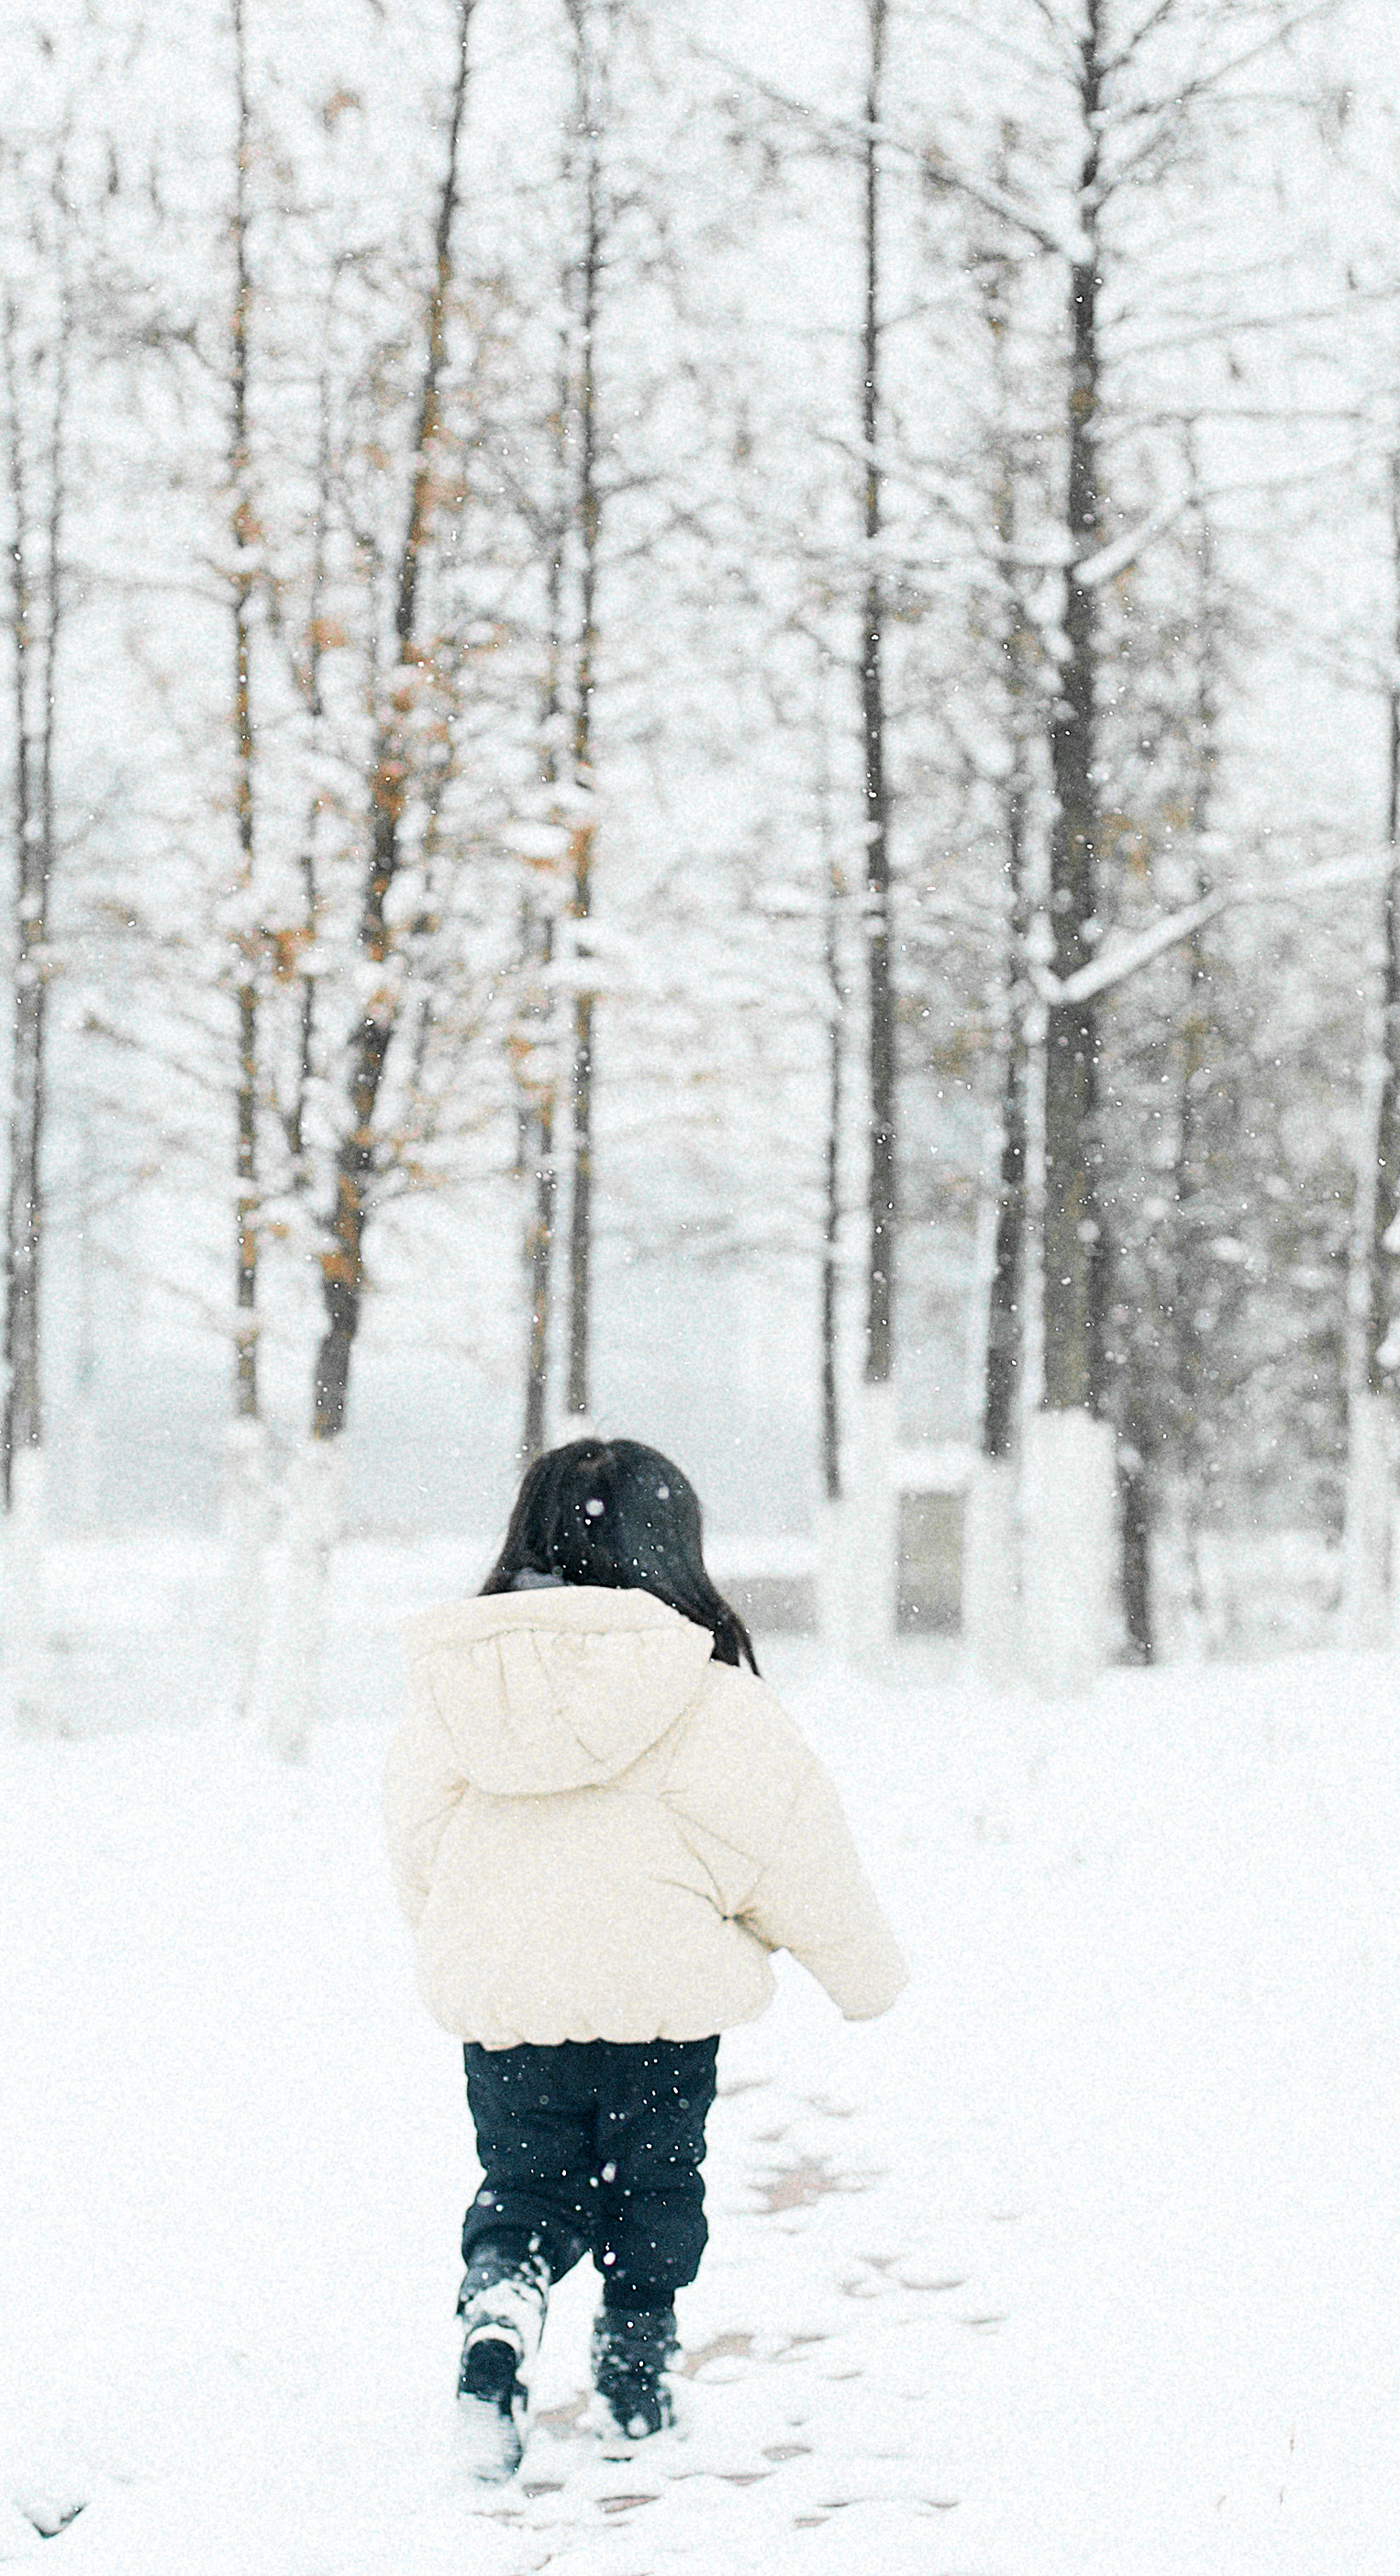 雪景背影图片女孤独图片